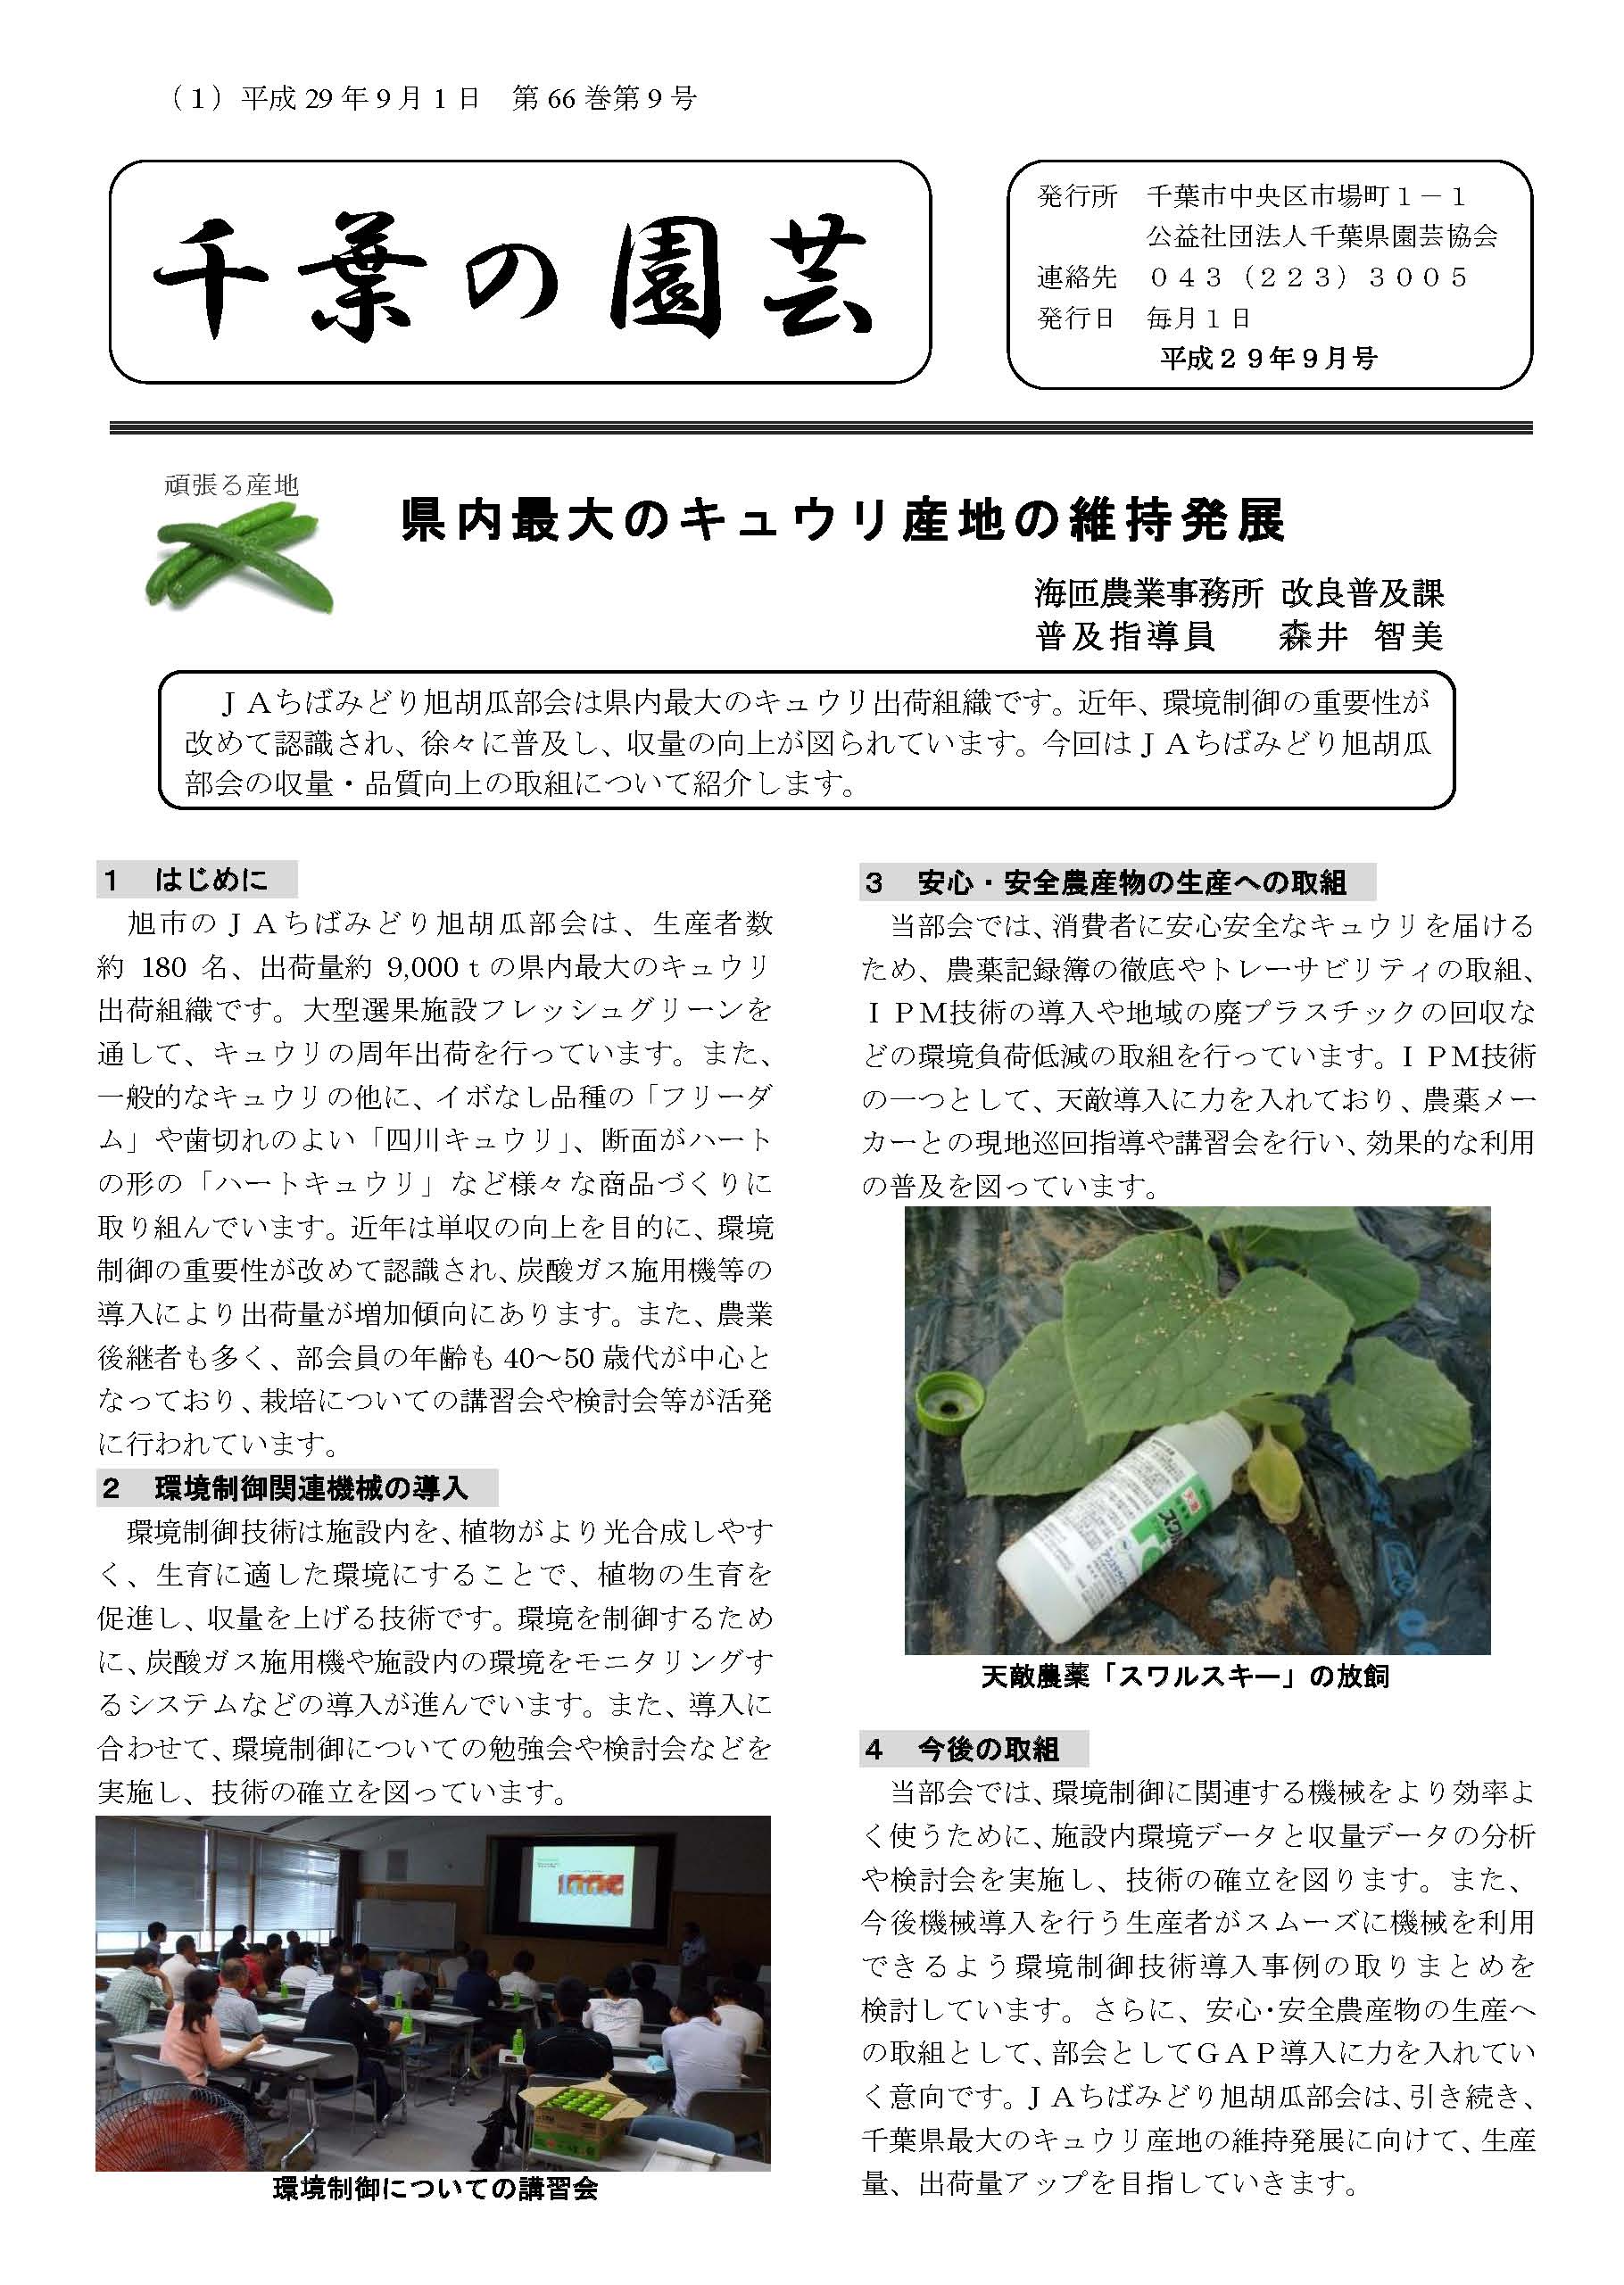 広報誌「千葉の園芸」平成29年9月号